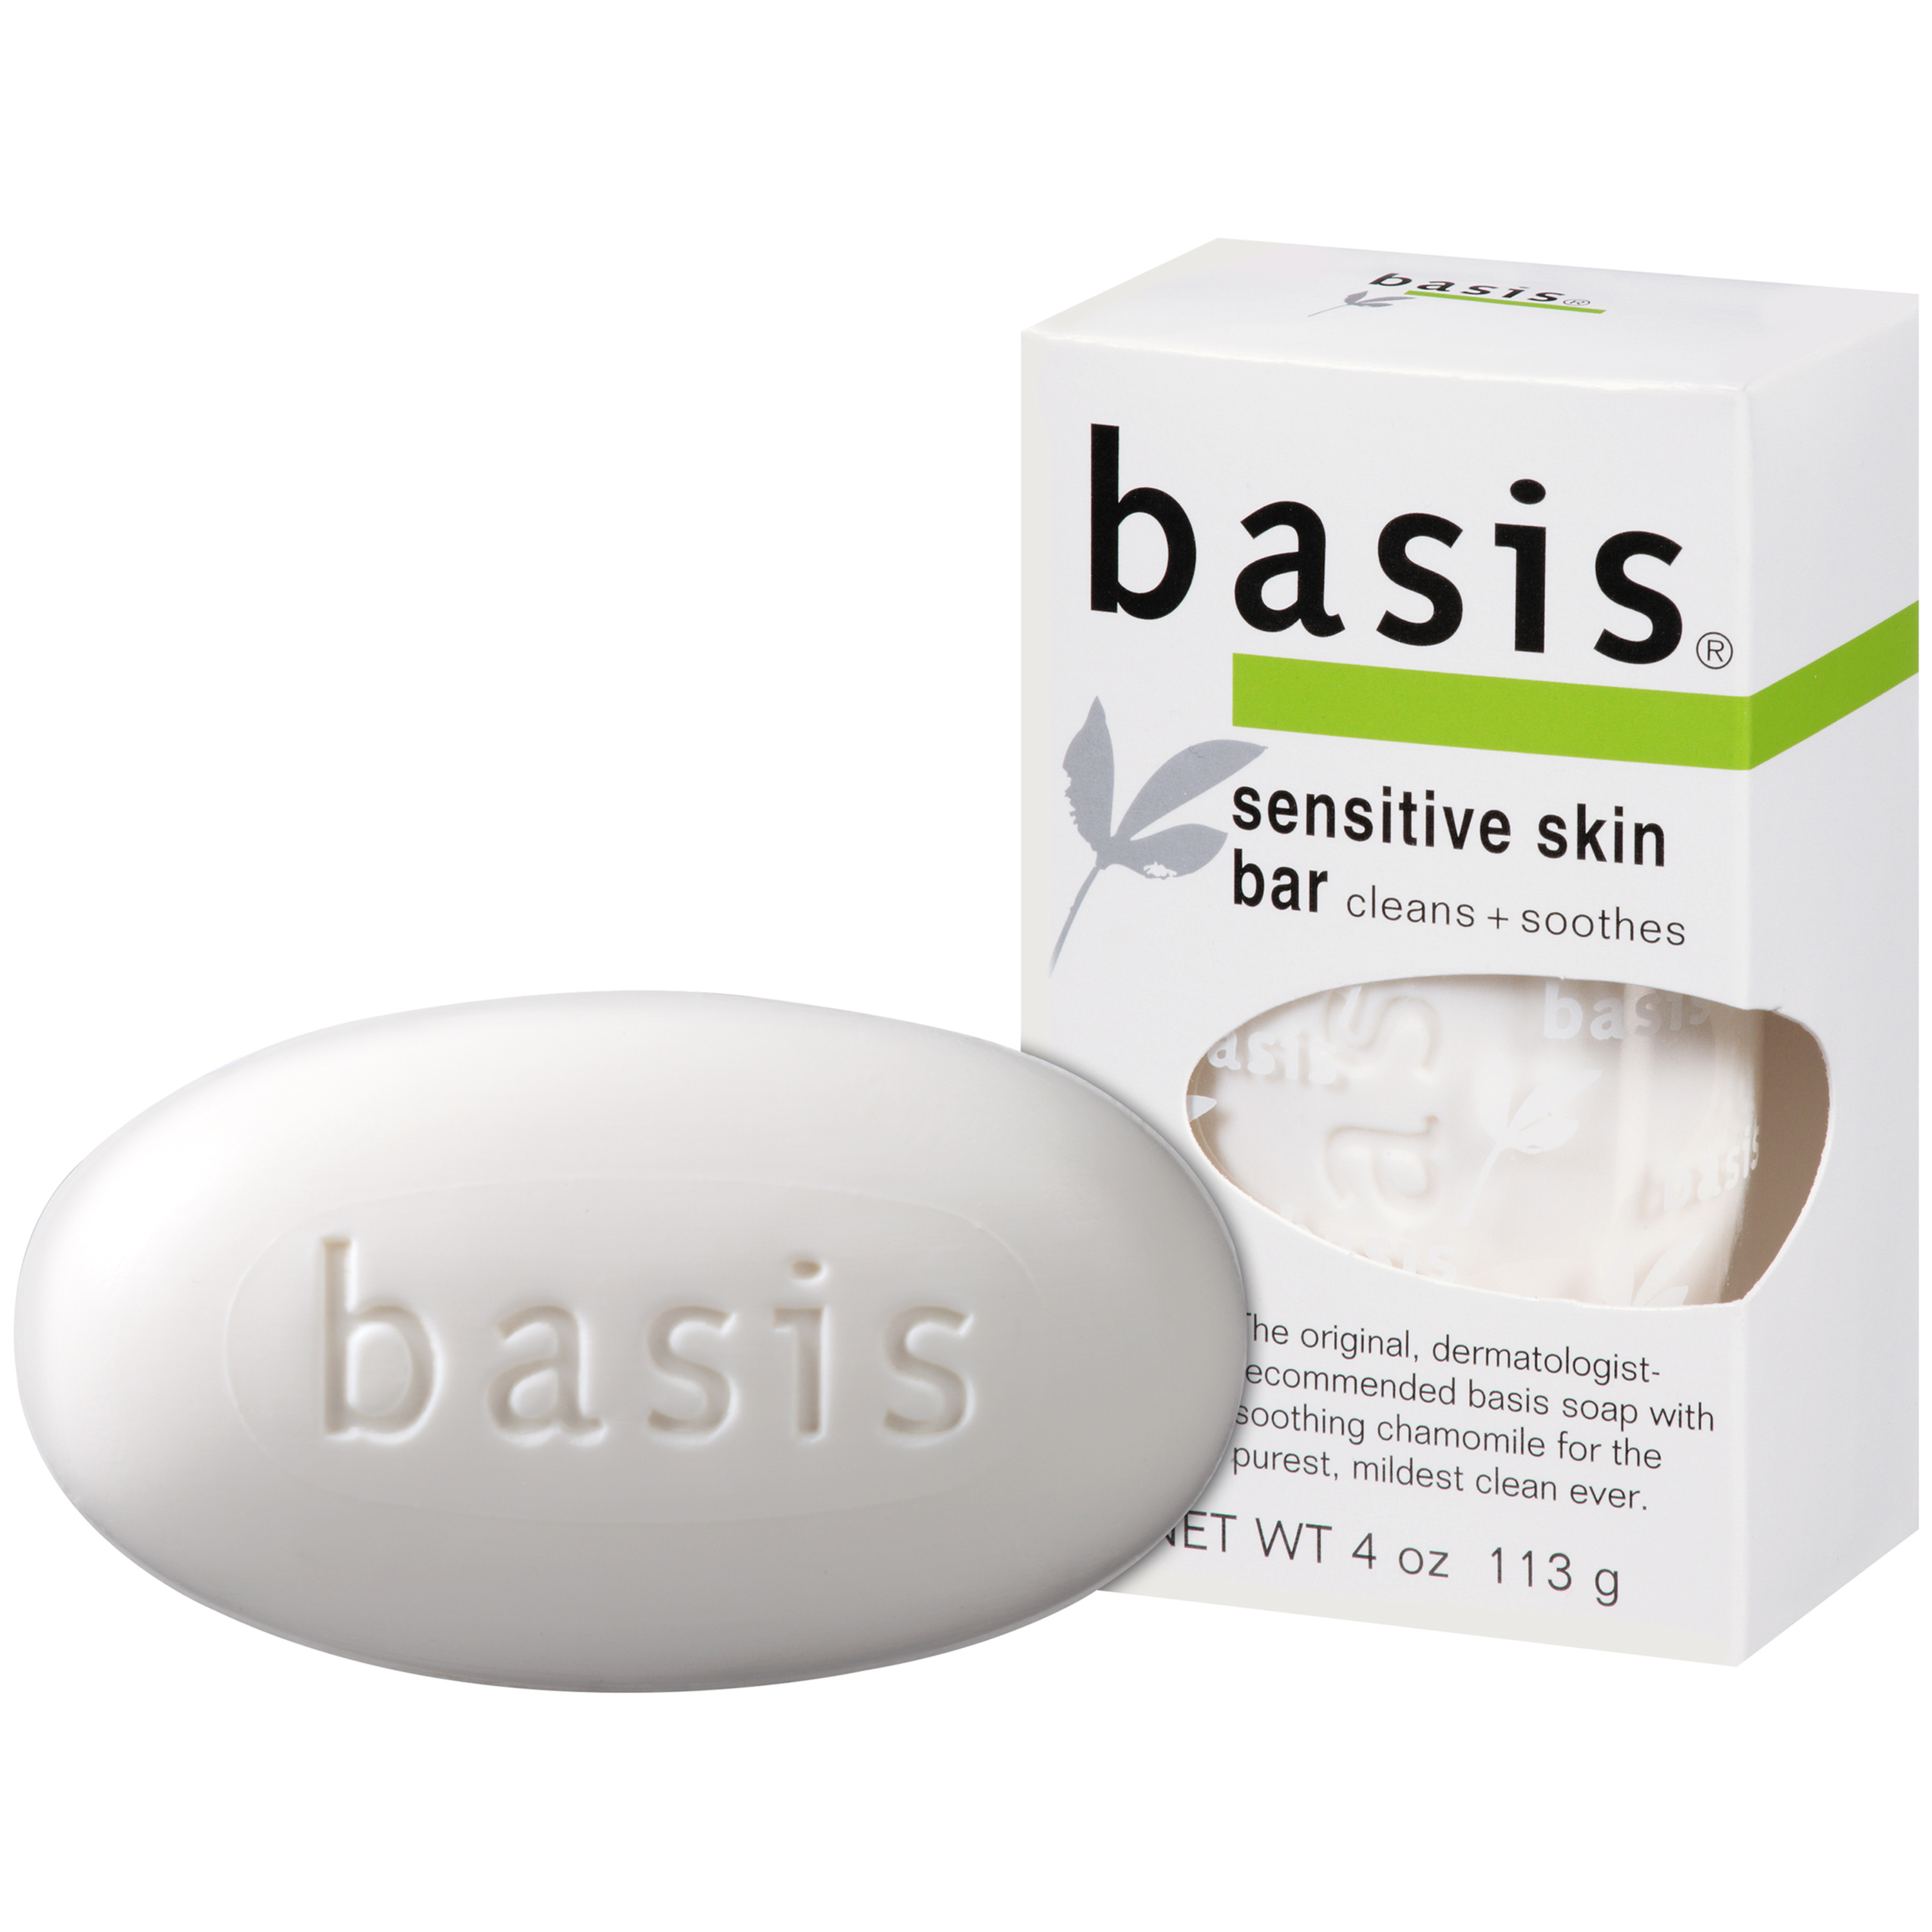 Basis Sensitive Skin Bar Soap, Unscented Soap Bar for Sensitive Skin, 4 Oz Bar - image 1 of 7